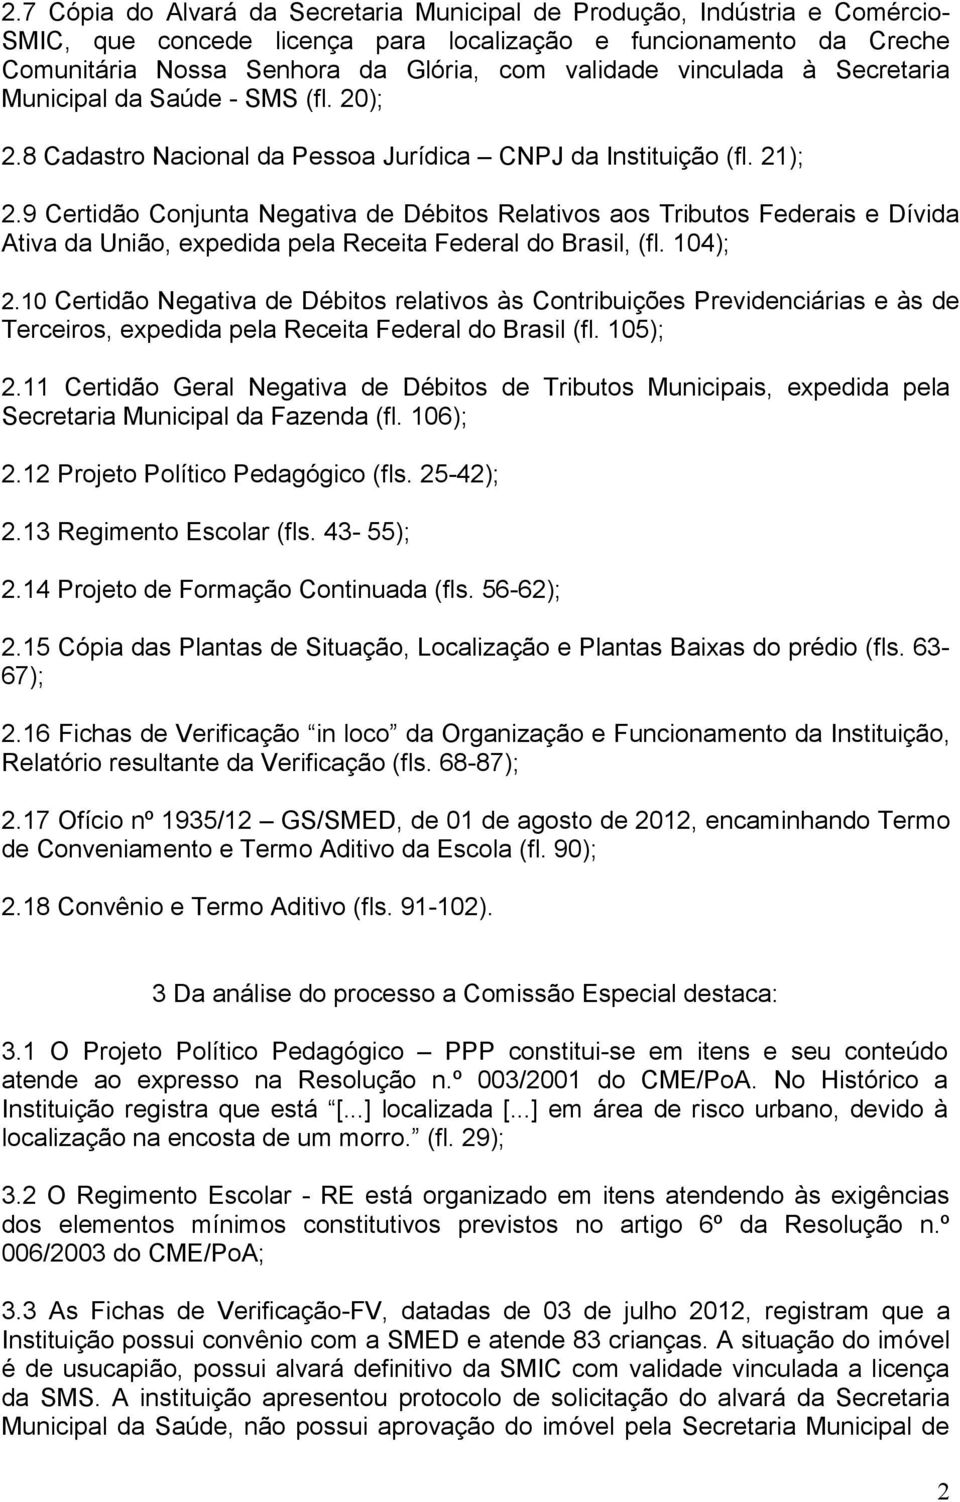 9 Certidão Conjunta Negativa de Débitos Relativos aos Tributos Federais e Dívida Ativa da União, expedida pela Receita Federal do Brasil, (fl. 104); 2.